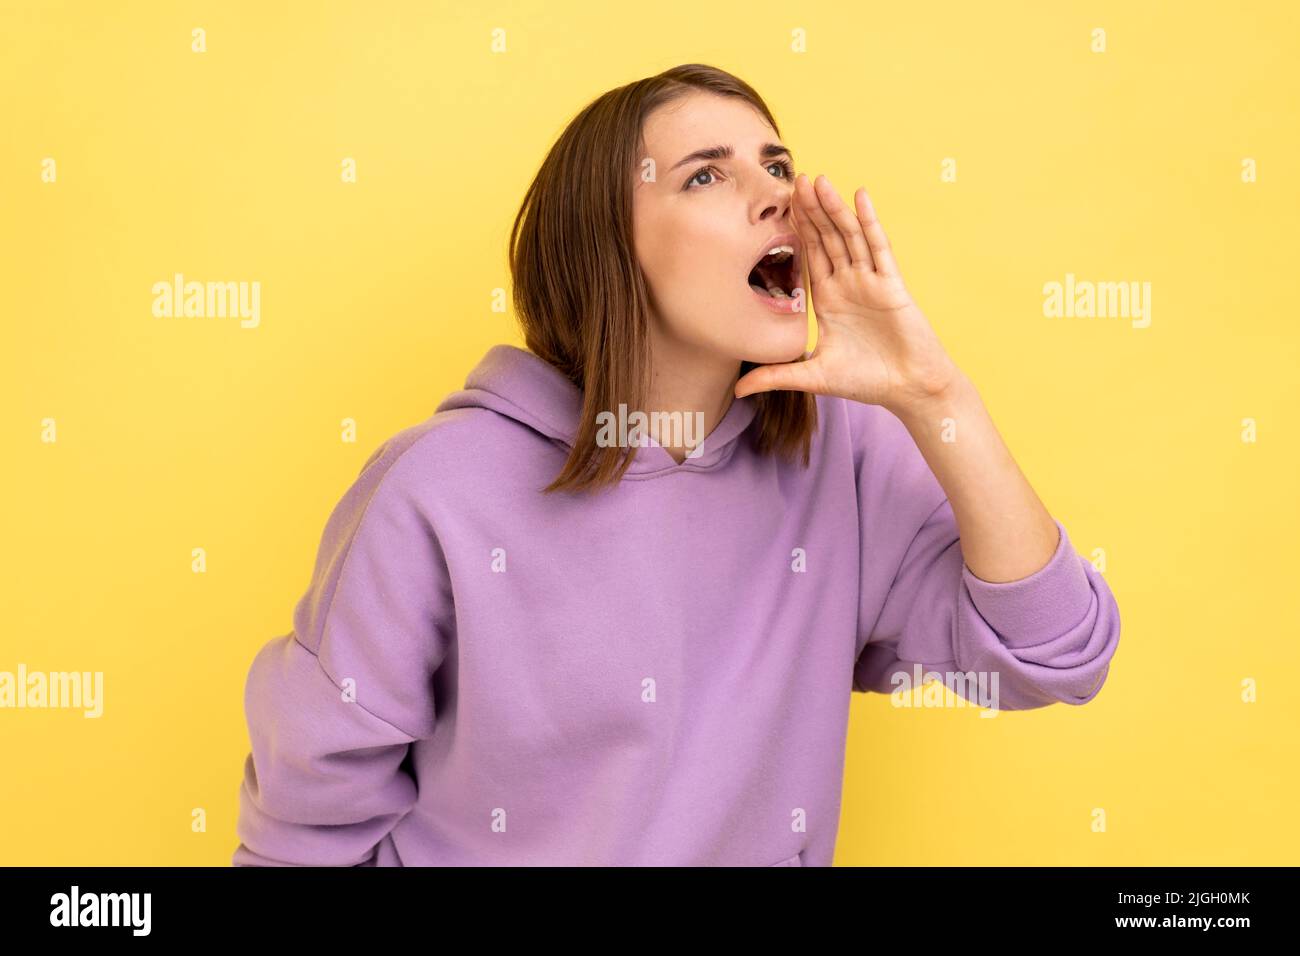 Attenzione, pubblicità. Profilo di donna urlando gridando circa la vendita, annunciando ad alta voce messaggio importante, indossando felpa con cappuccio viola. Studio interno girato isolato su sfondo giallo. Foto Stock